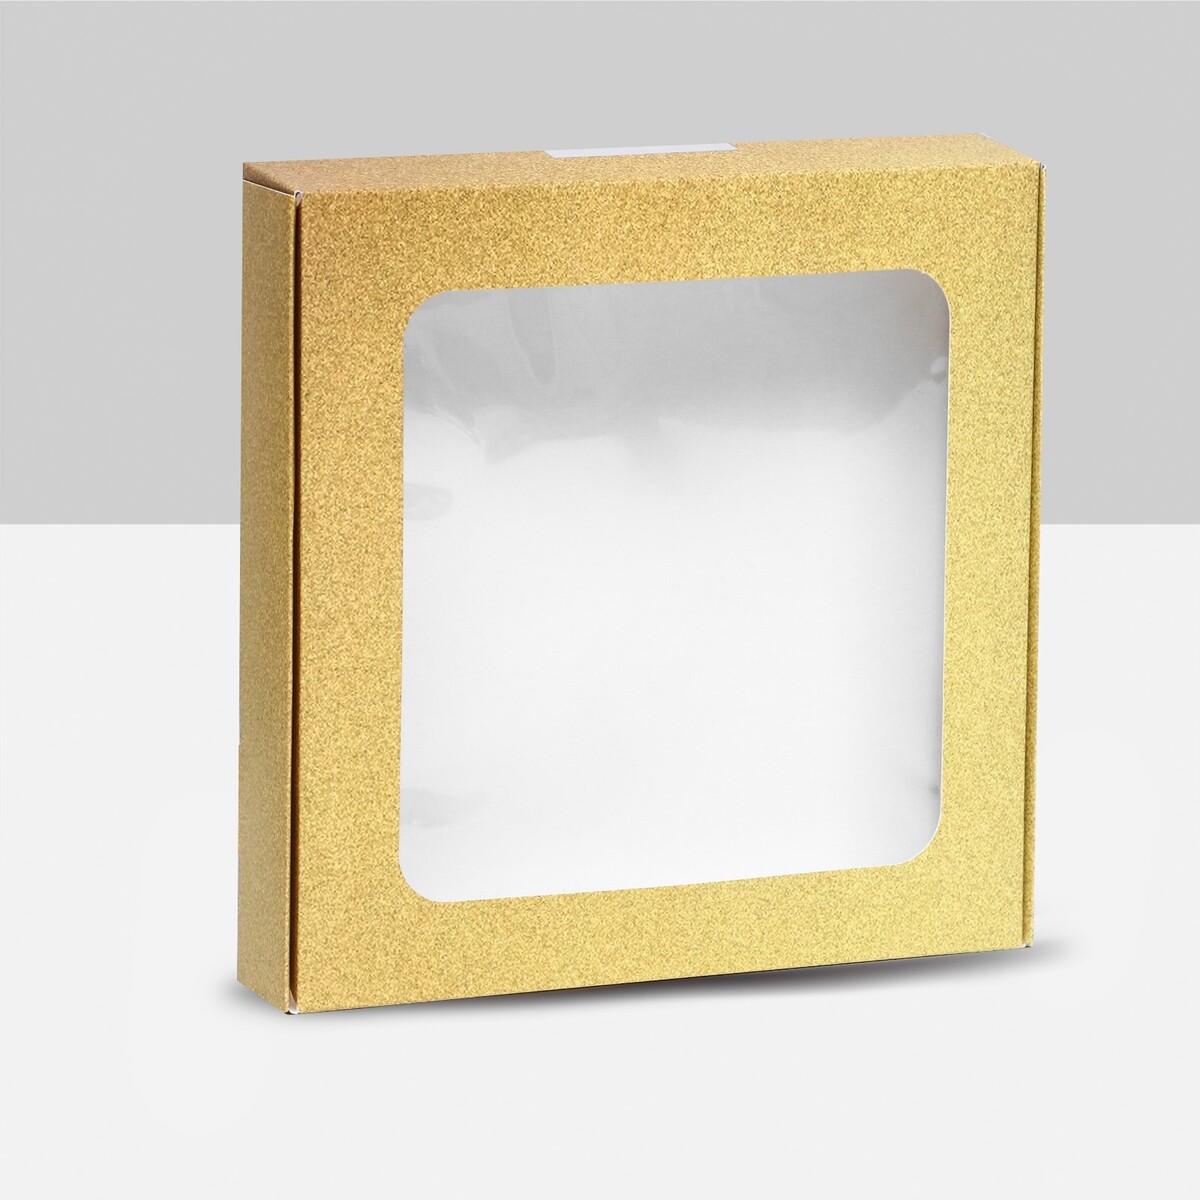 Коробка самосборная, с окном, золотая, 16 х 16 х 3 см коробка самосборная с окном